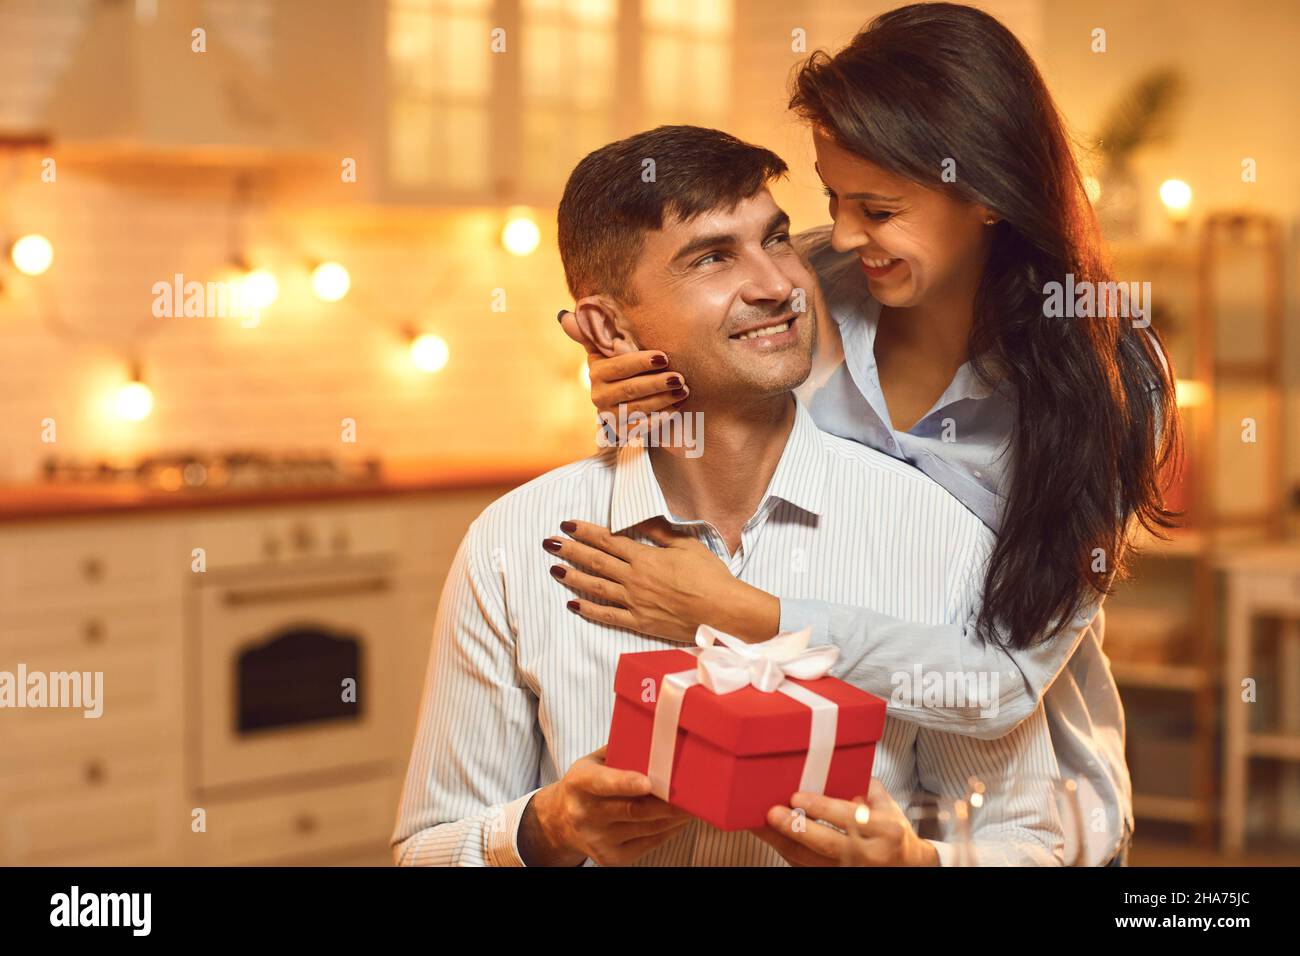 Freudig aufgeregt Mann erhielt ein Geschenk von seiner Freundin, die hinter ihm steht und umarmt ihn. Stockfoto